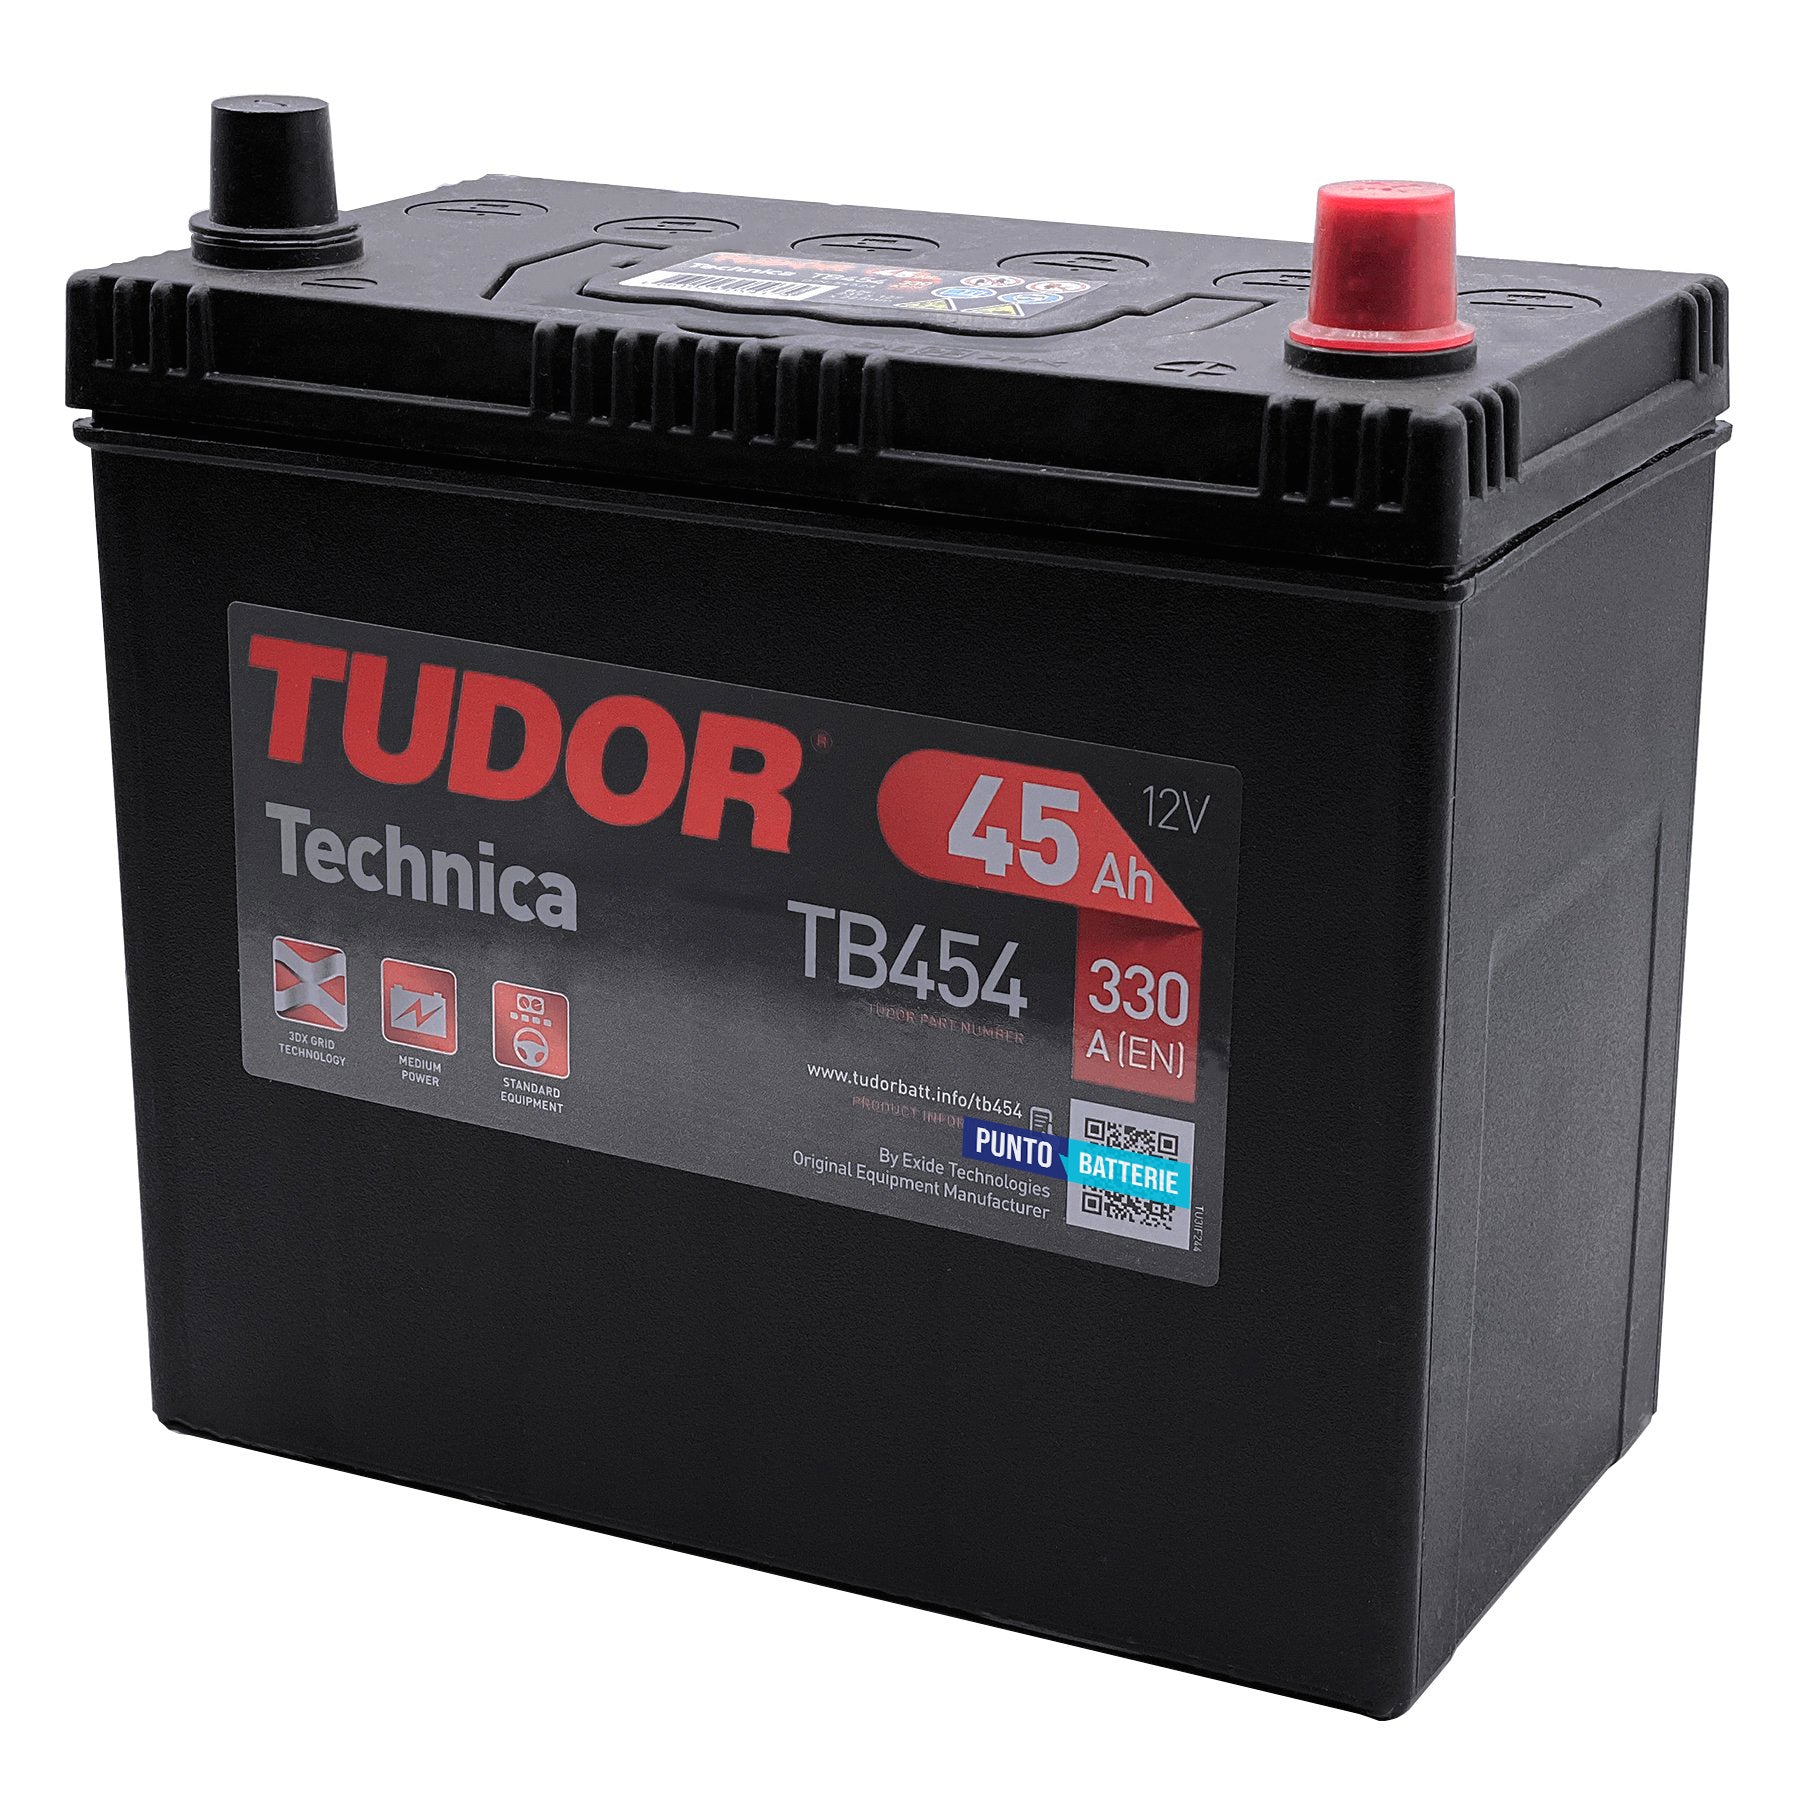 Batteria originale Tudor Technica TB454, dimensioni 237 x 127 x 227, polo positivo a destra, 12 volt, 45 amperora, 330 ampere. Batteria per auto e veicoli leggeri.